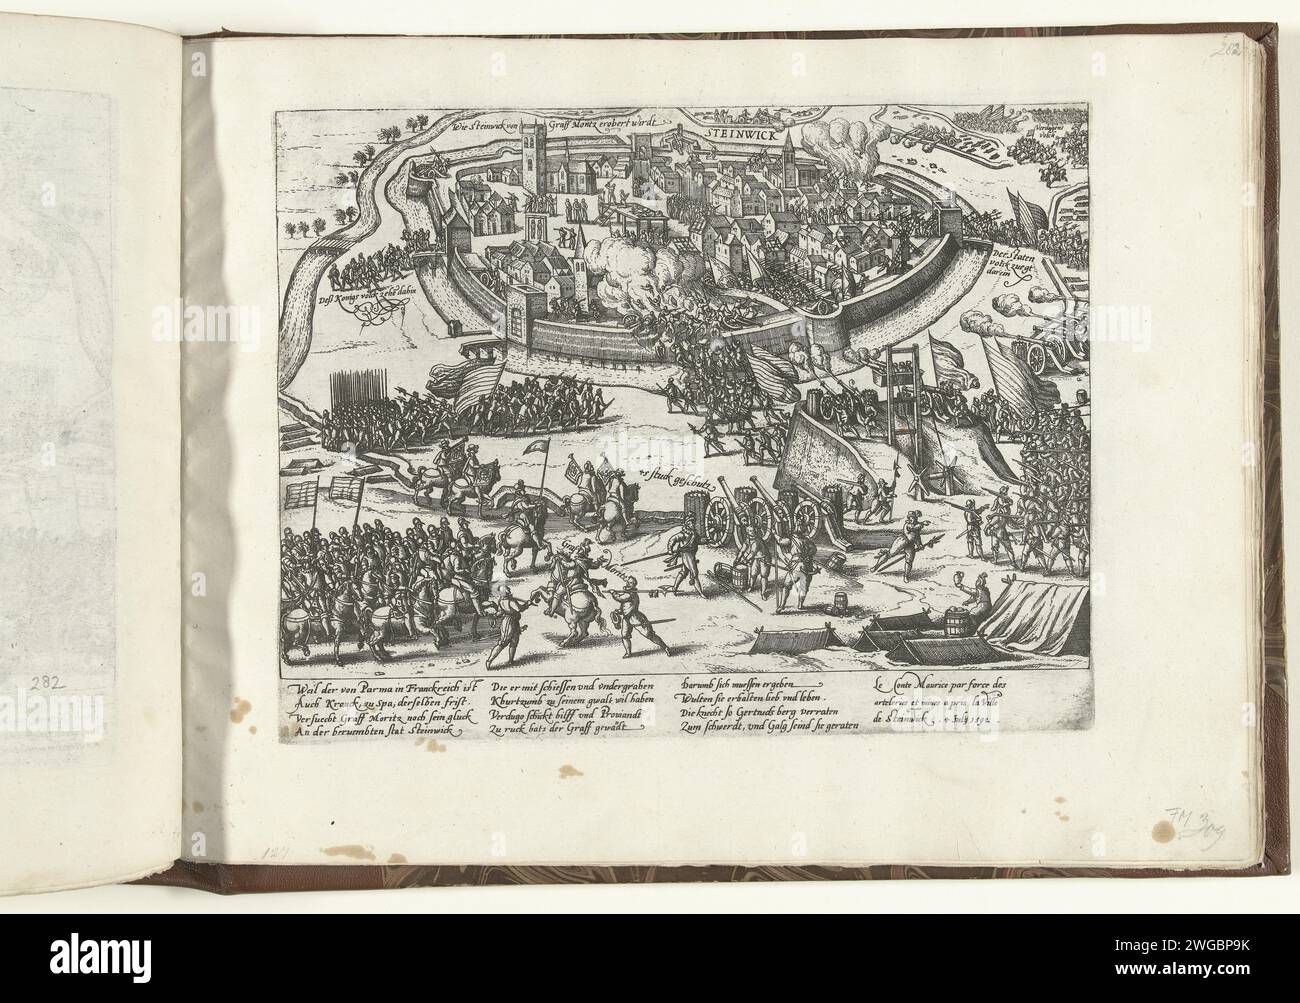 Prise de Steenwijk par Maurits, 1592, 1592 - 1594 imprimer Siège et fusillade de Steenwijk par l'armée d'État sous le prince Maurits et reddition de l'occupant espagnol, 4 juillet 1592. À droite du milieu, le mur de terre surélevé avec tour en bois, un soi-disant chat, à partir duquel la ville est tirée. Une explosion sous le mur de la ville a lieu à deux endroits. En haut à gauche, les troupes espagnoles quittent la ville. Avec légende de 12 lignes en allemand et 3 lignes en français. Non numéroté. Fortifications de gravure de papier de Cologne, génie militaire quartier de pierre Banque D'Images